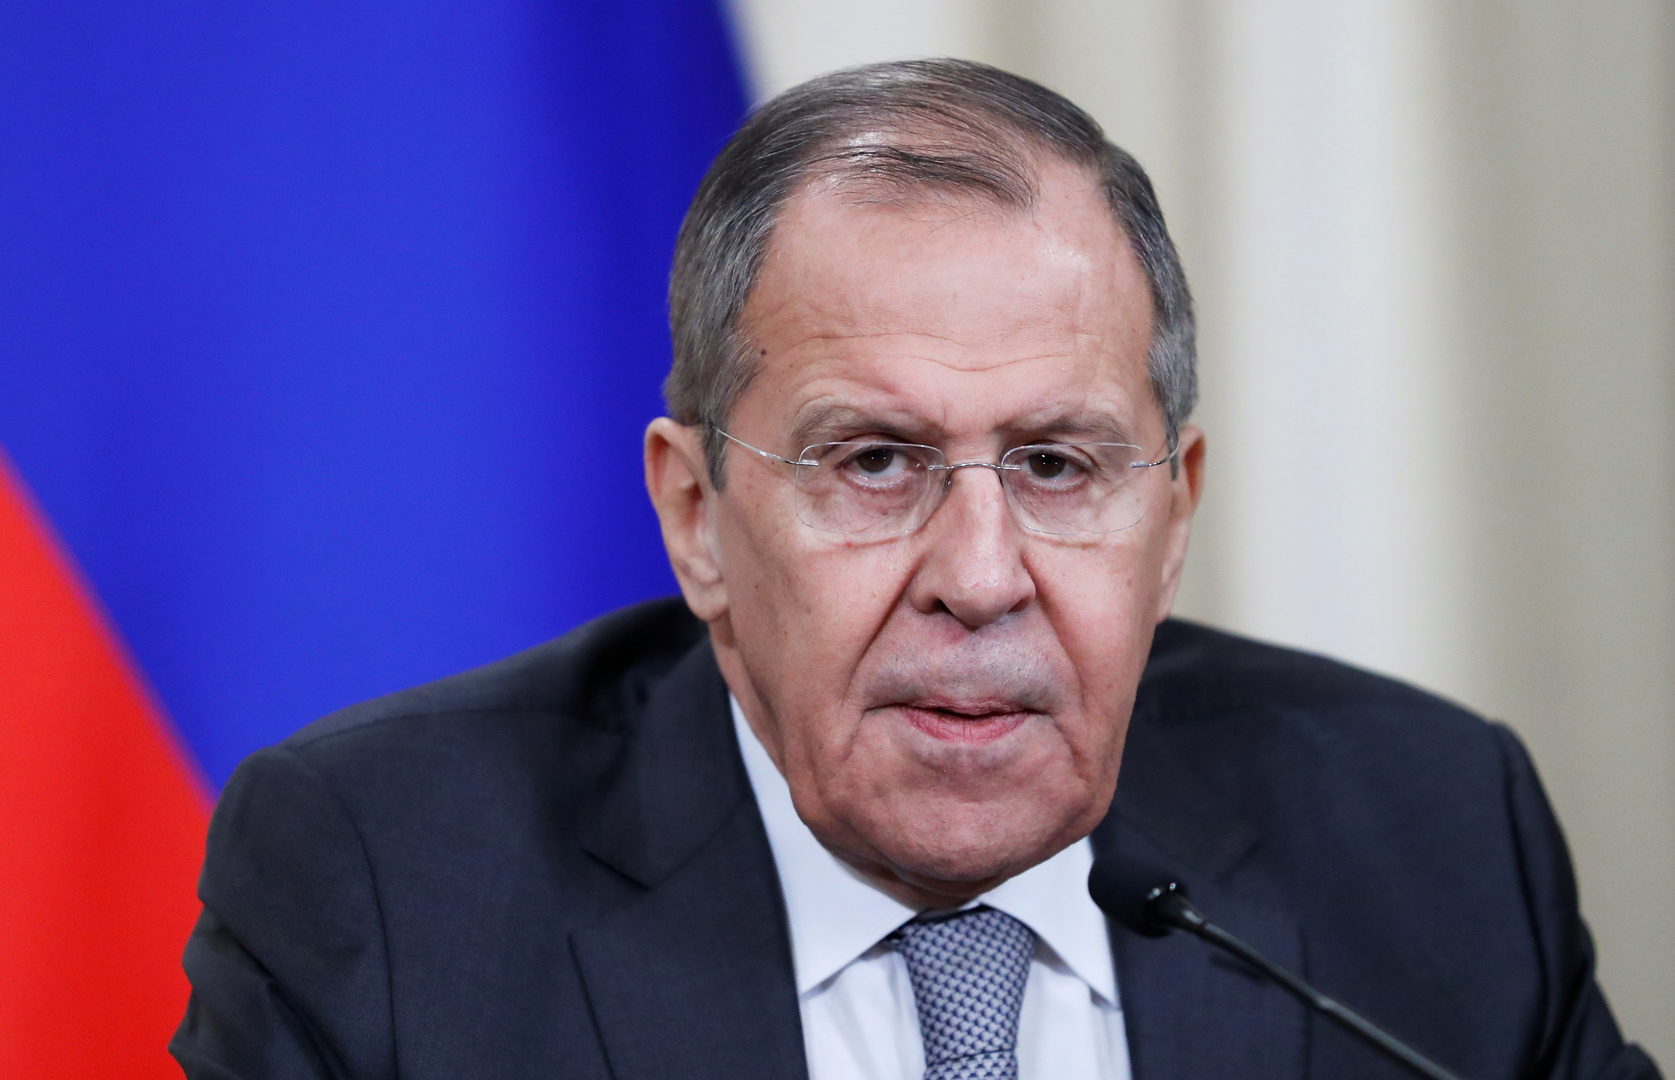 الرئيس السوري يشكر روسيا على مساعدة بلاده في الحرب ضد الإرهاب والدعم السياسي